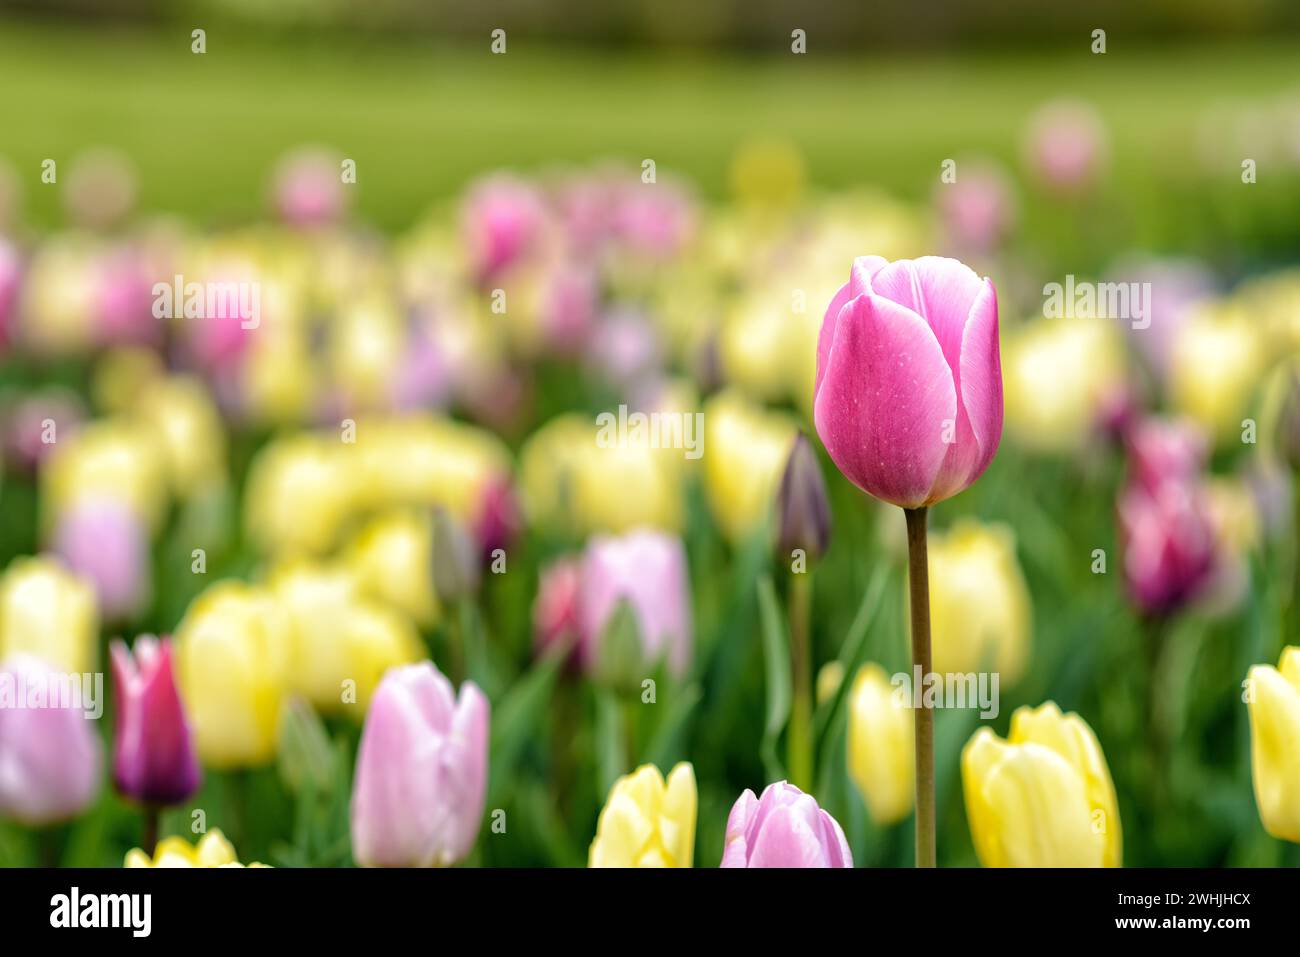 Tulip in full bloom in springtime Stock Photo